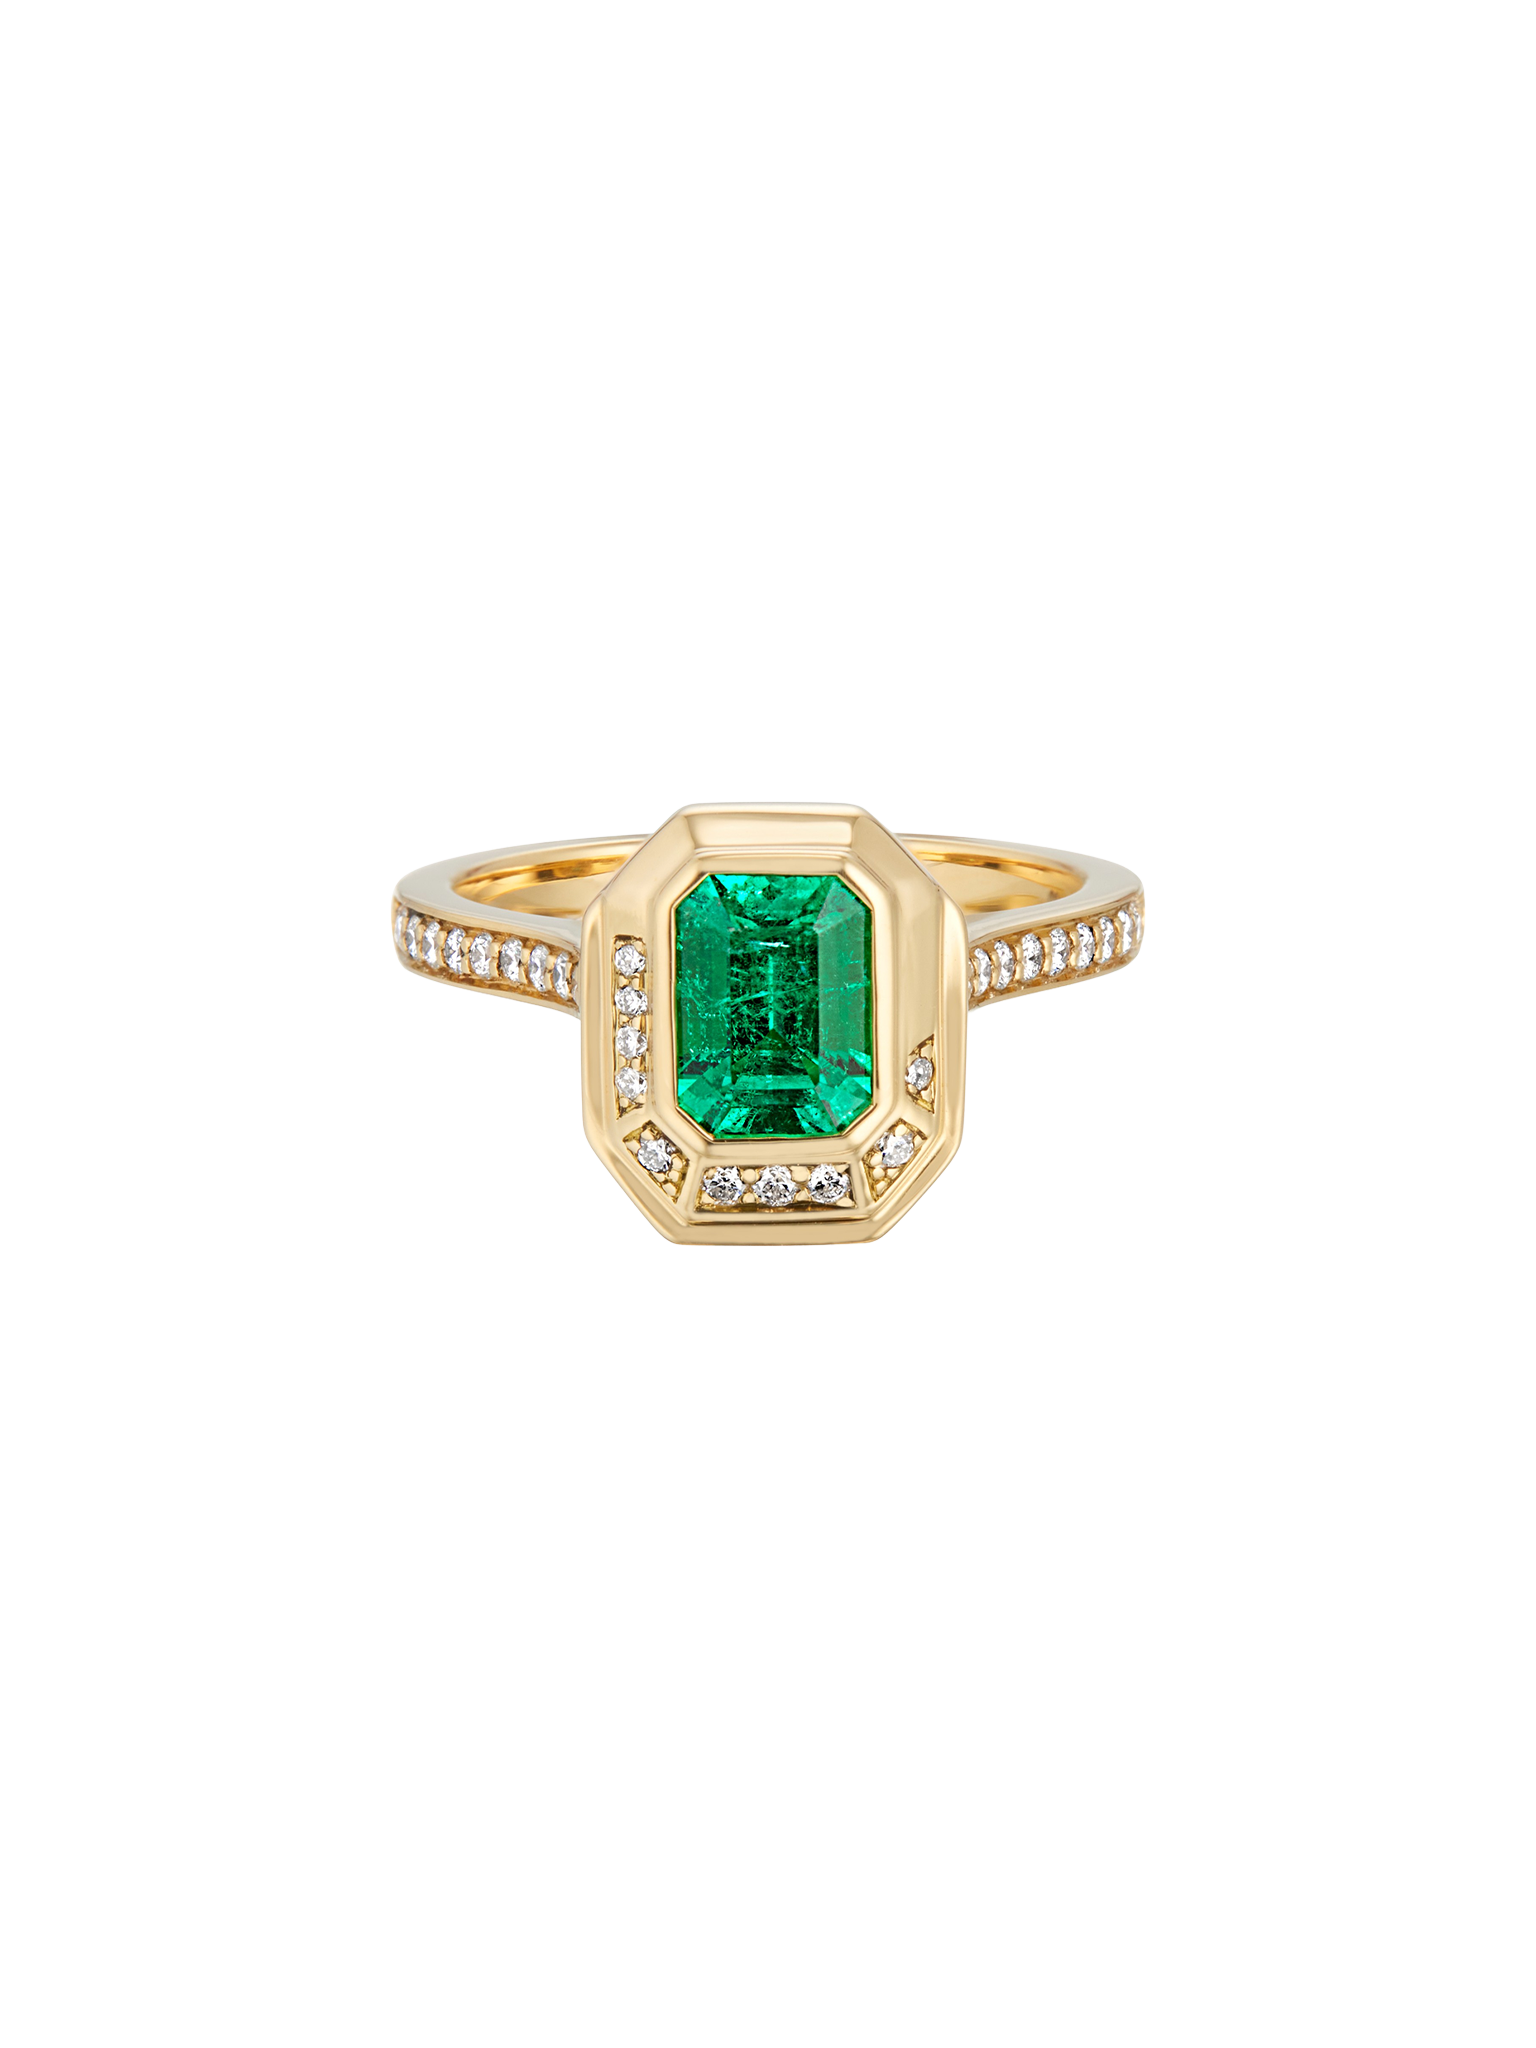 18ct yellow gold emerald cut muzo emerald & diamond engagement ring by ...